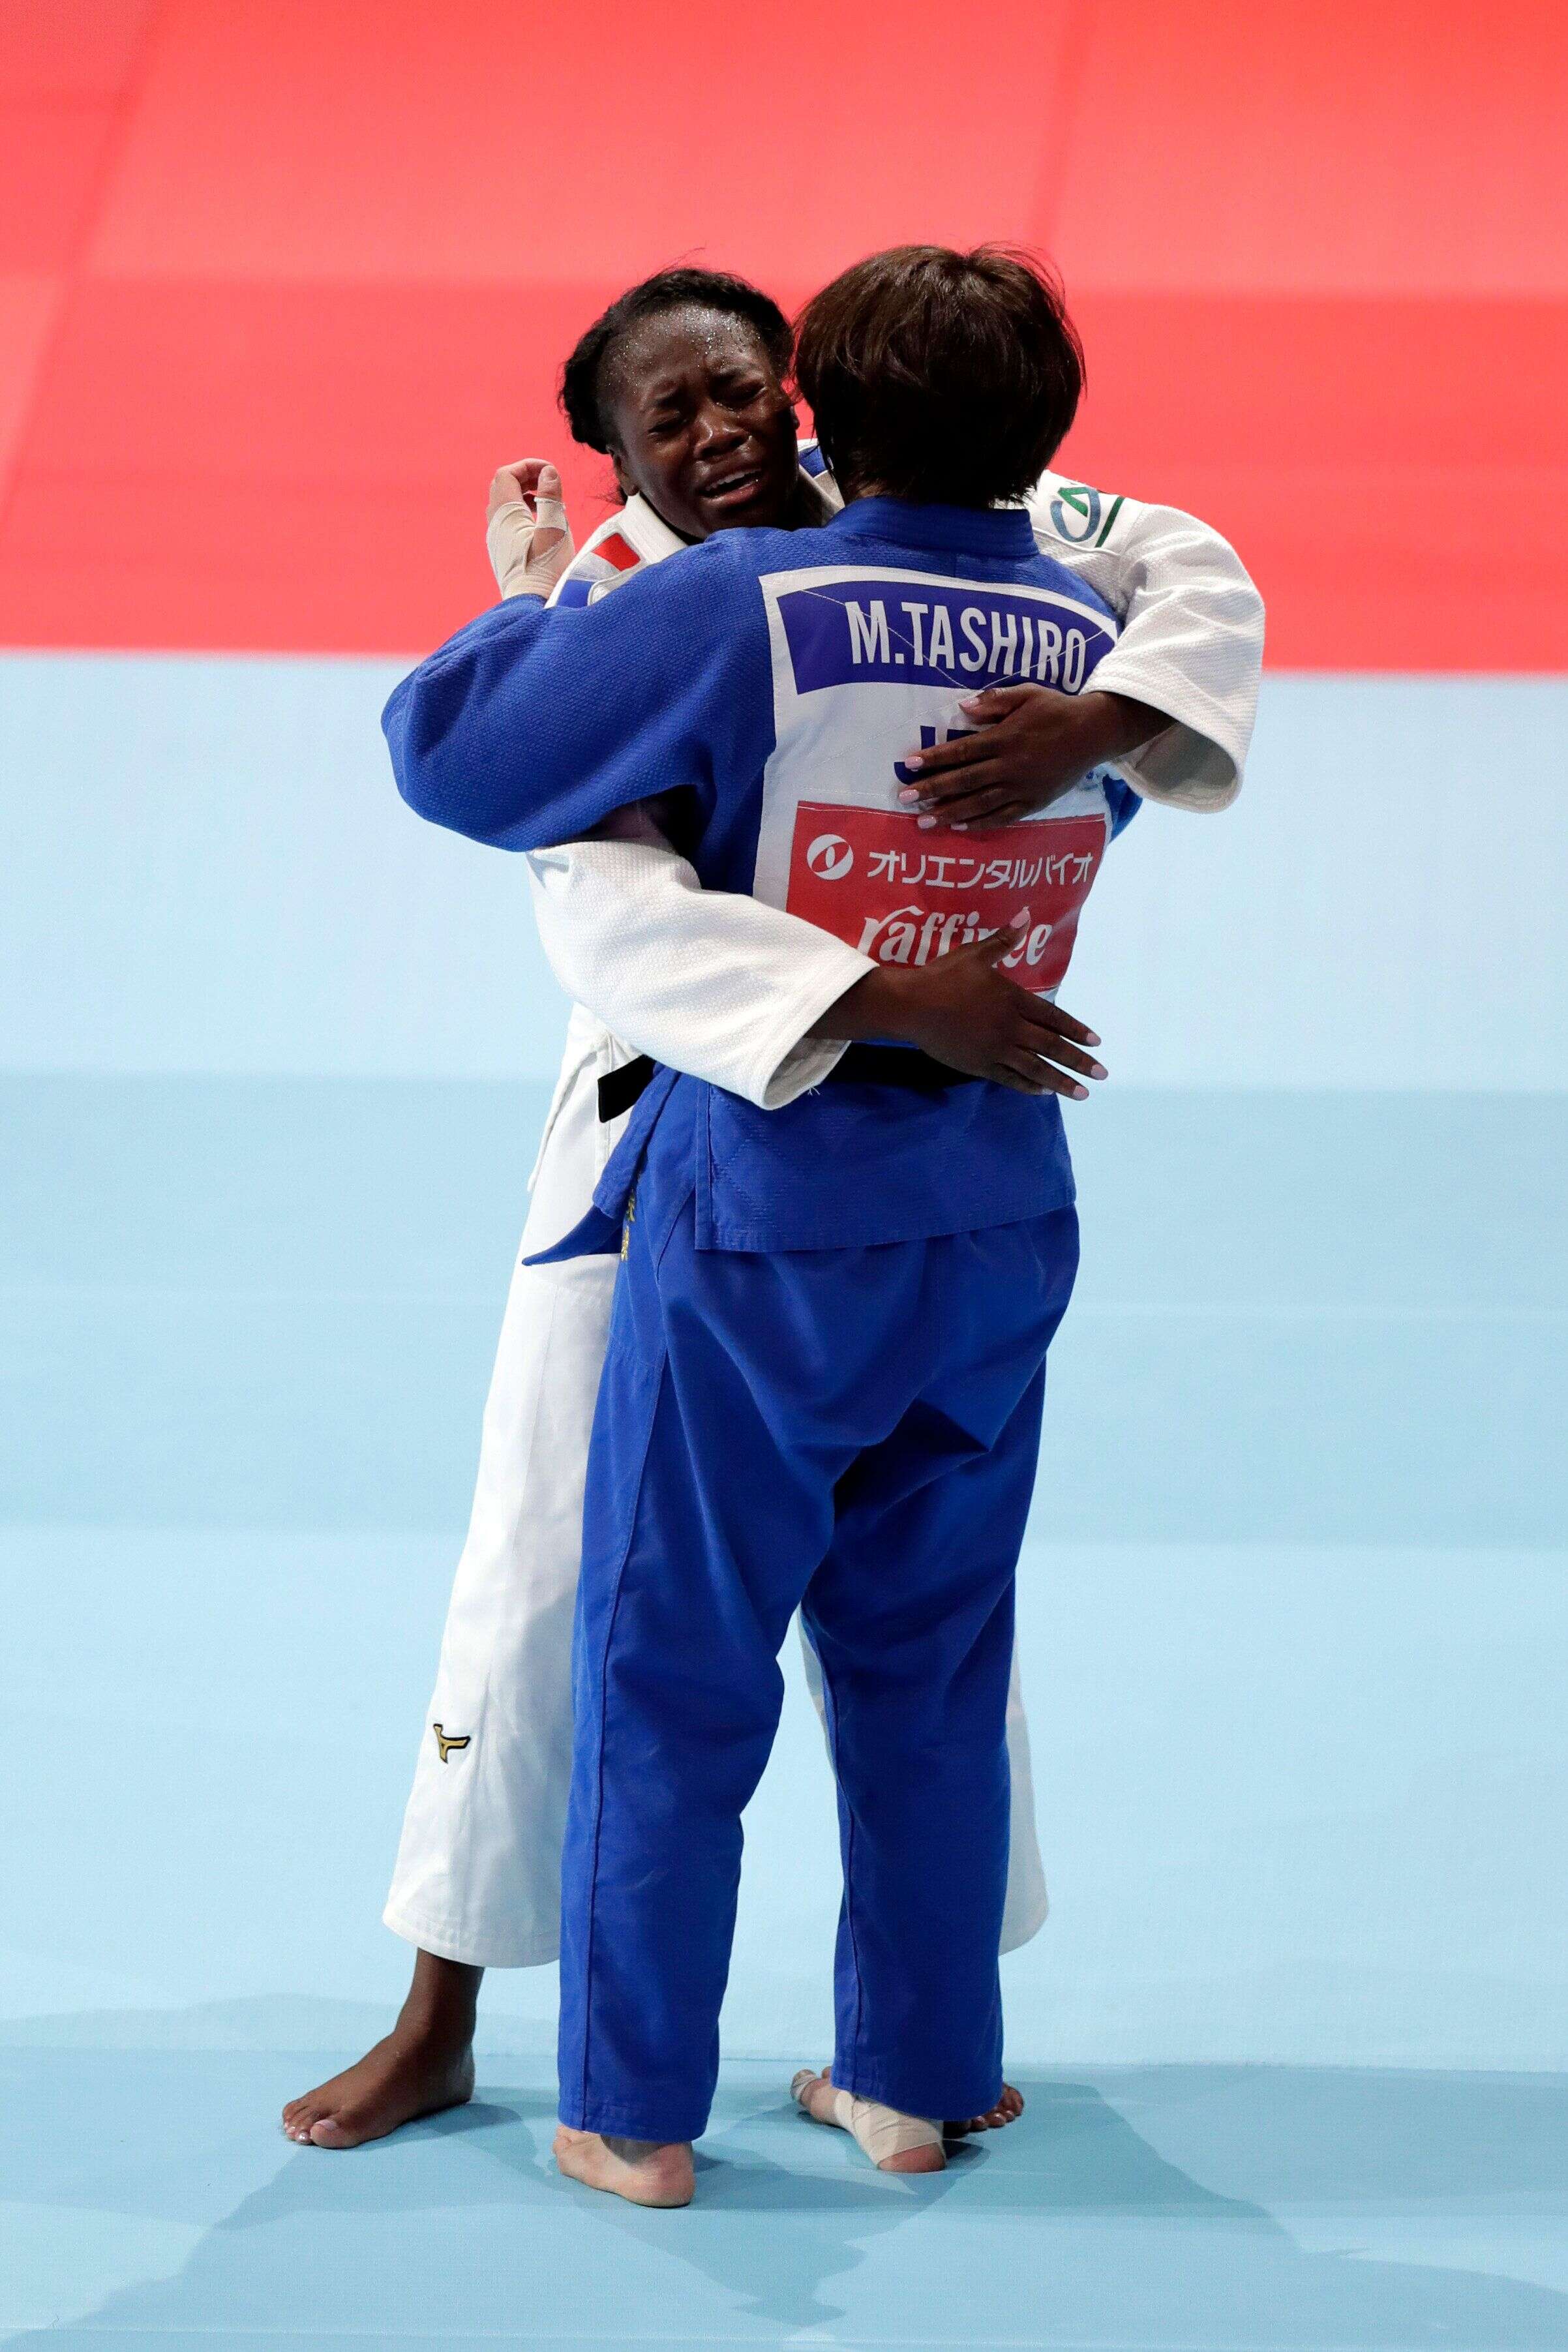 Clarisse Agbegnenou (en blanc) tombe dans les bras de son adversaire Miku Tashiro après sa victoire aux Mondiaux de judo, ce mercredi 28 août 2019